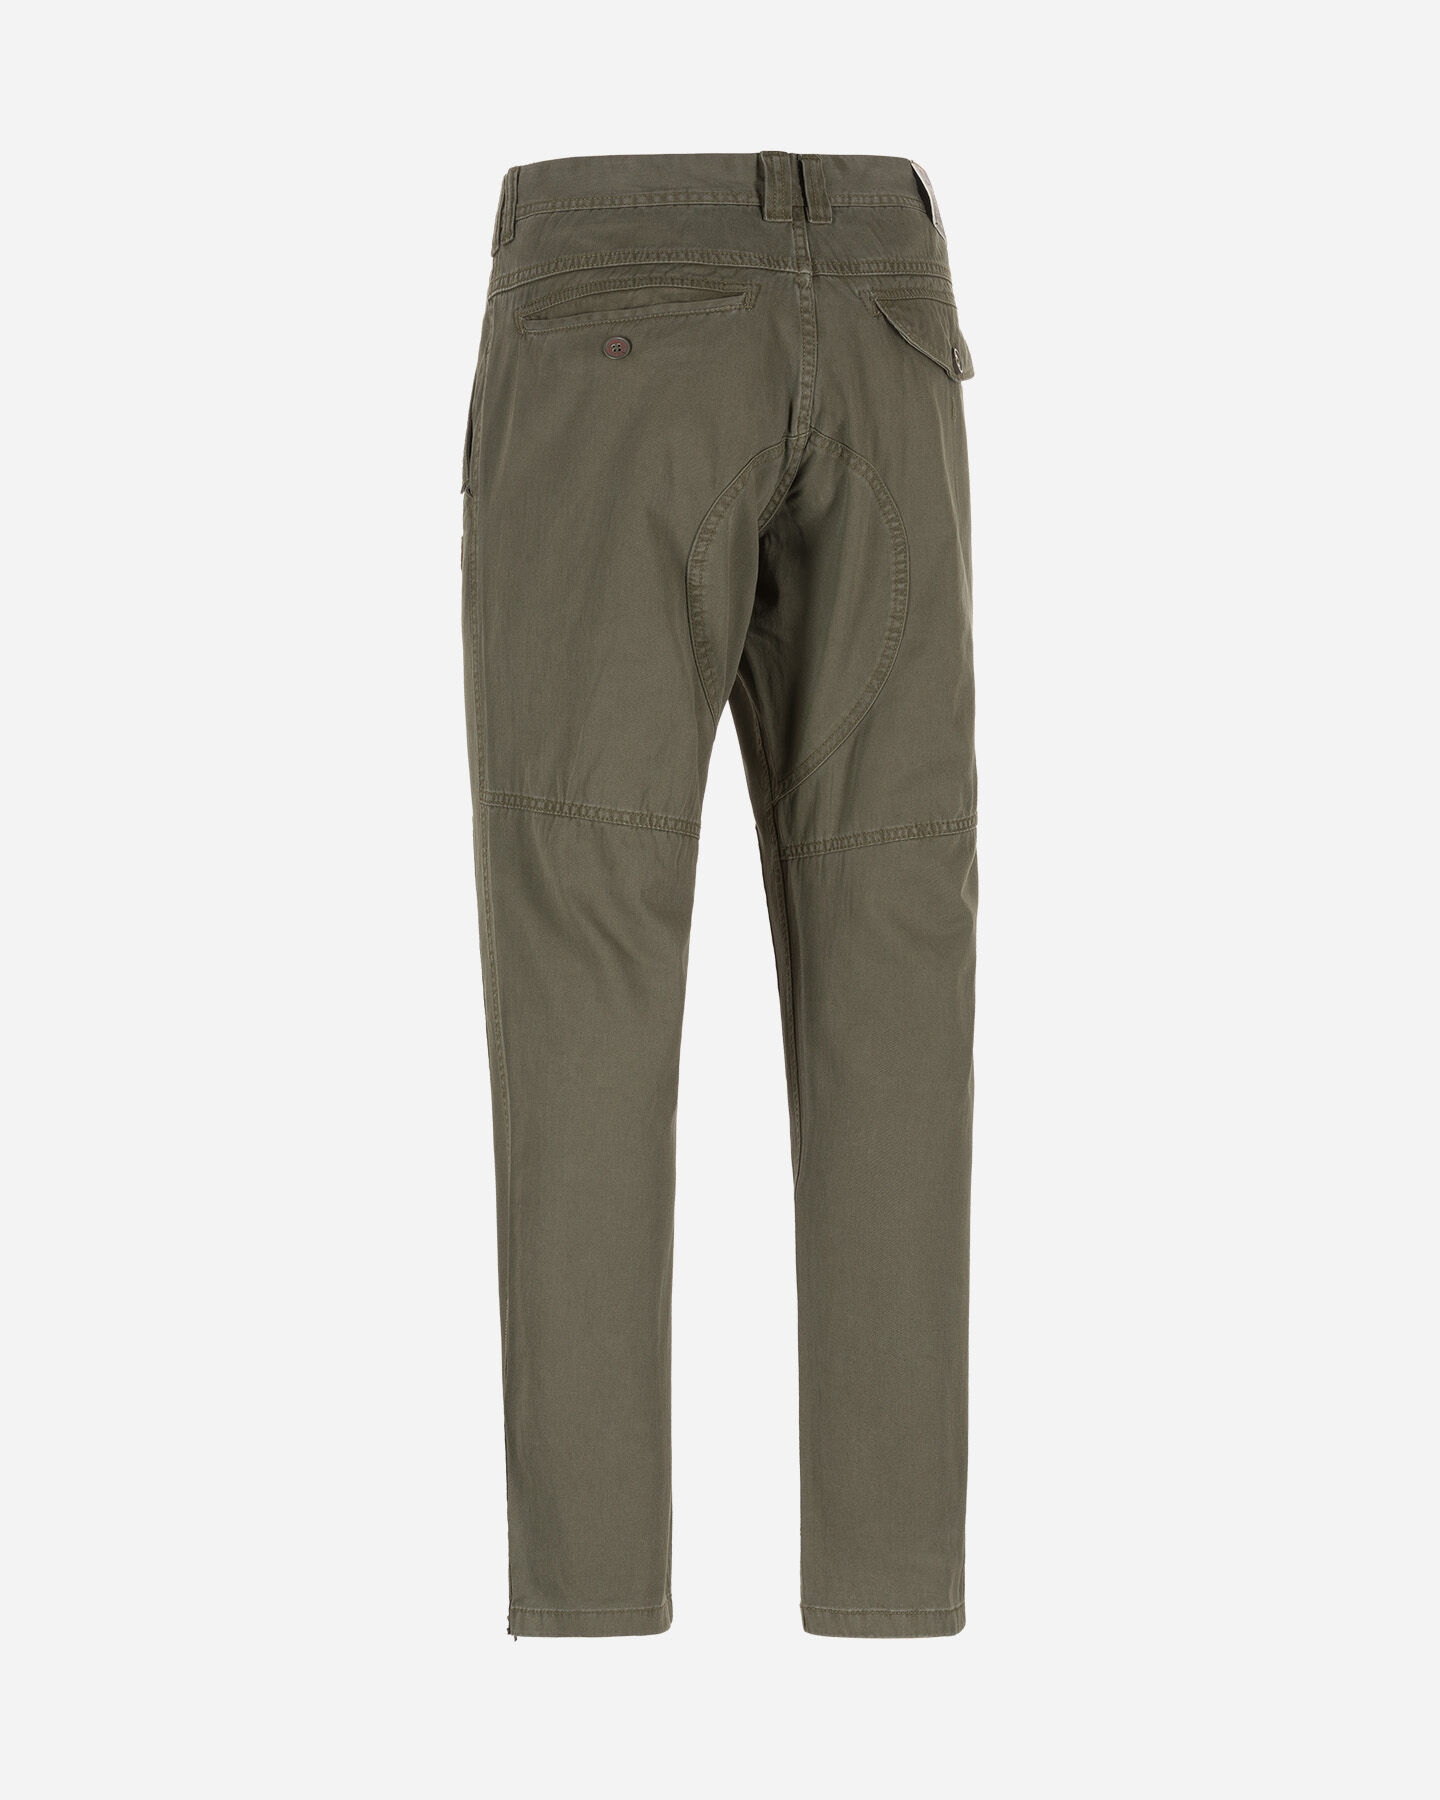  Pantalone MISTRAL CHINO M S4074998|055|42 scatto 1